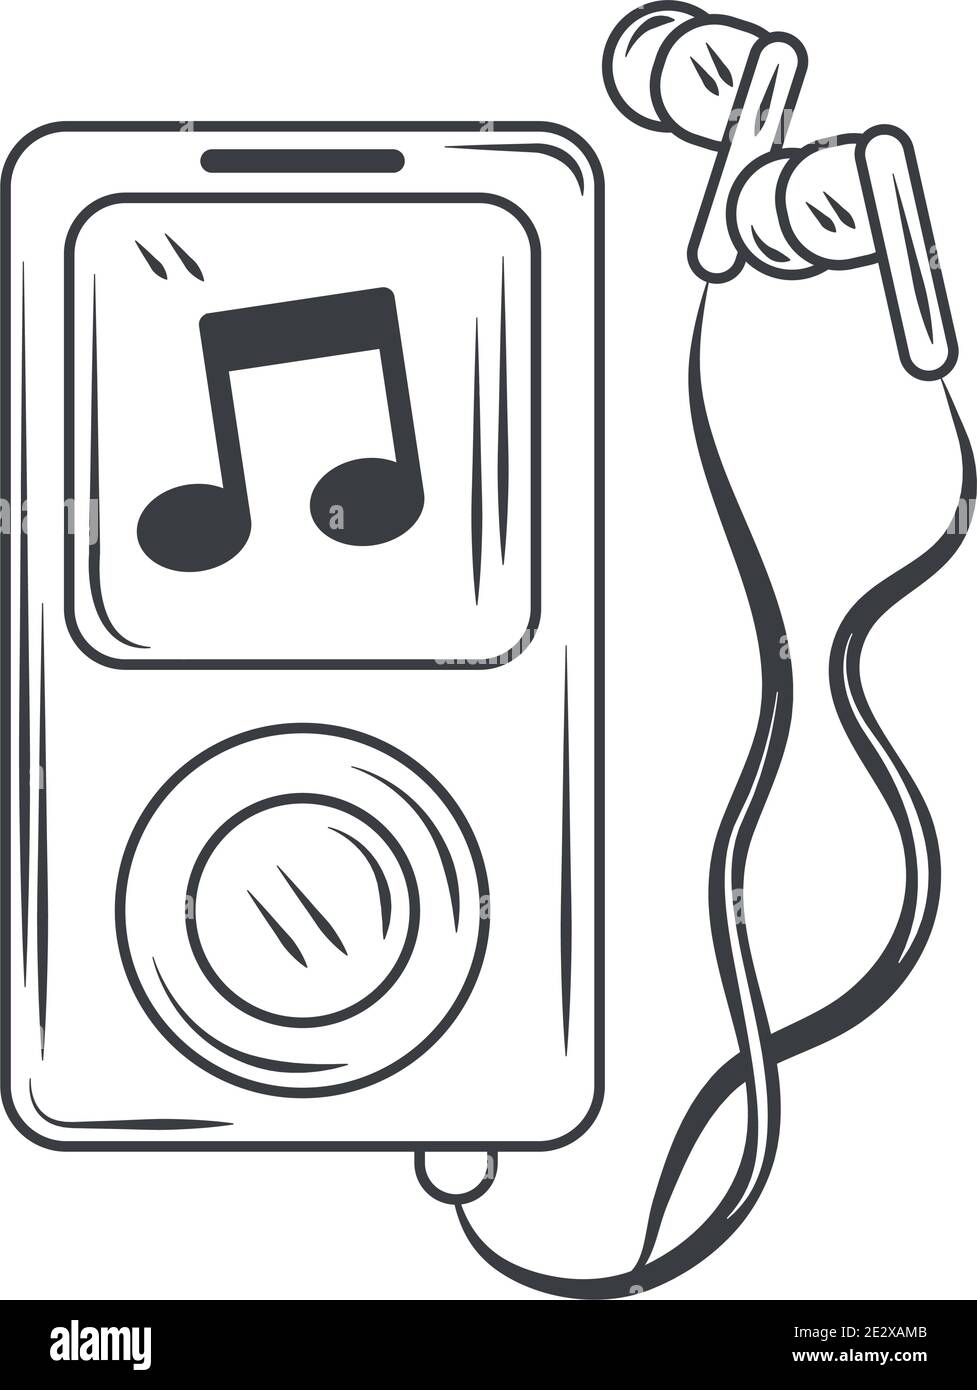 hobby escuchar música mp3 y auriculares, dibujo estilo vector ilustración  Imagen Vector de stock - Alamy